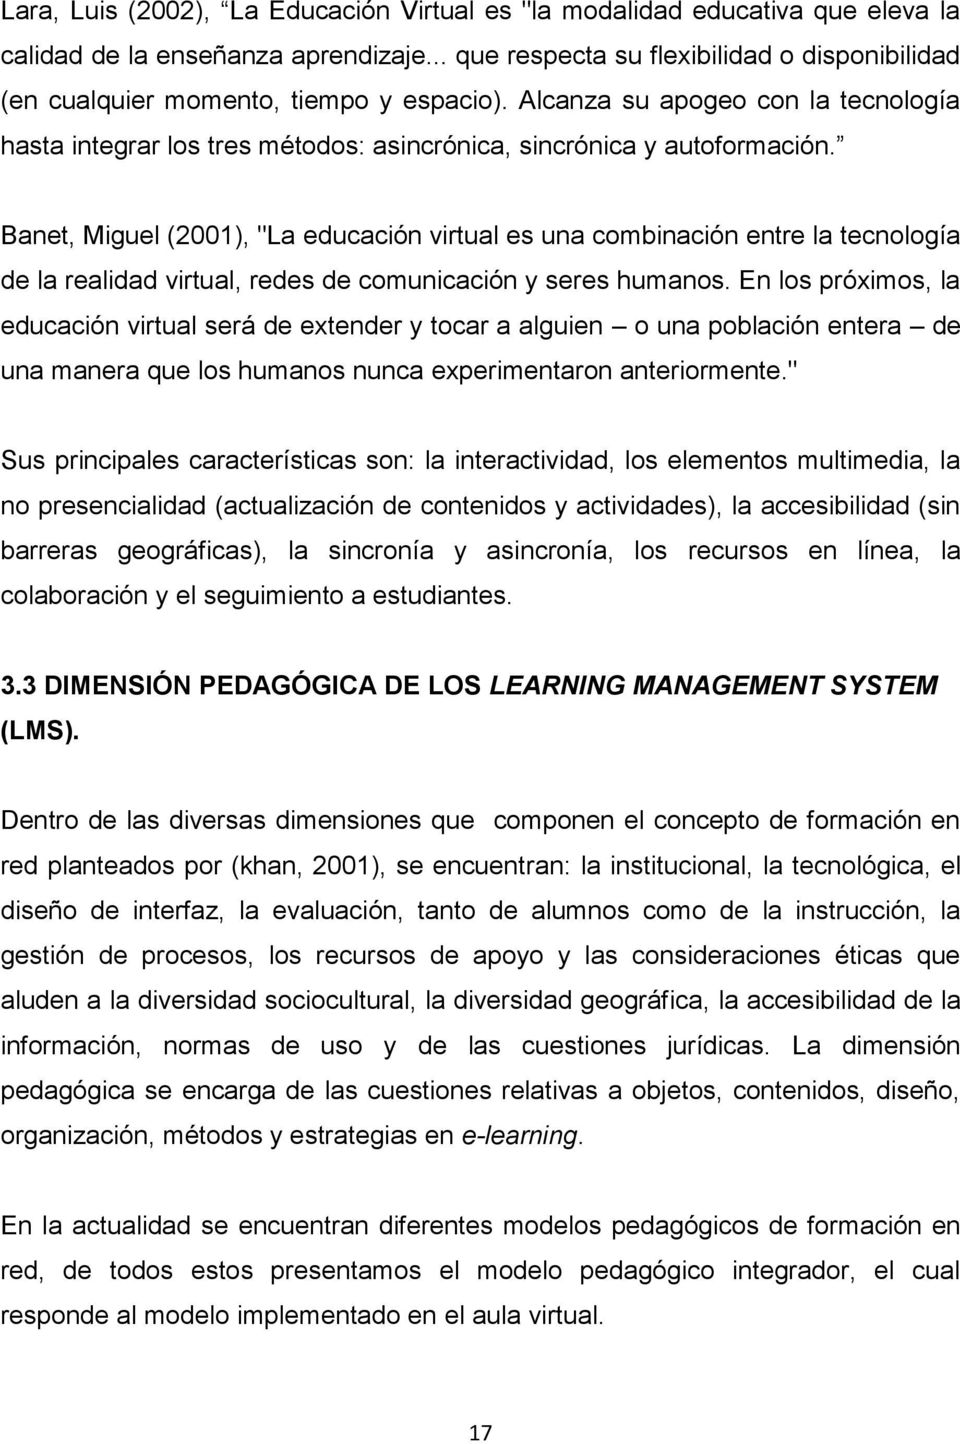 Banet, Miguel (2001), "La educación virtual es una combinación entre la tecnología de la realidad virtual, redes de comunicación y seres humanos.